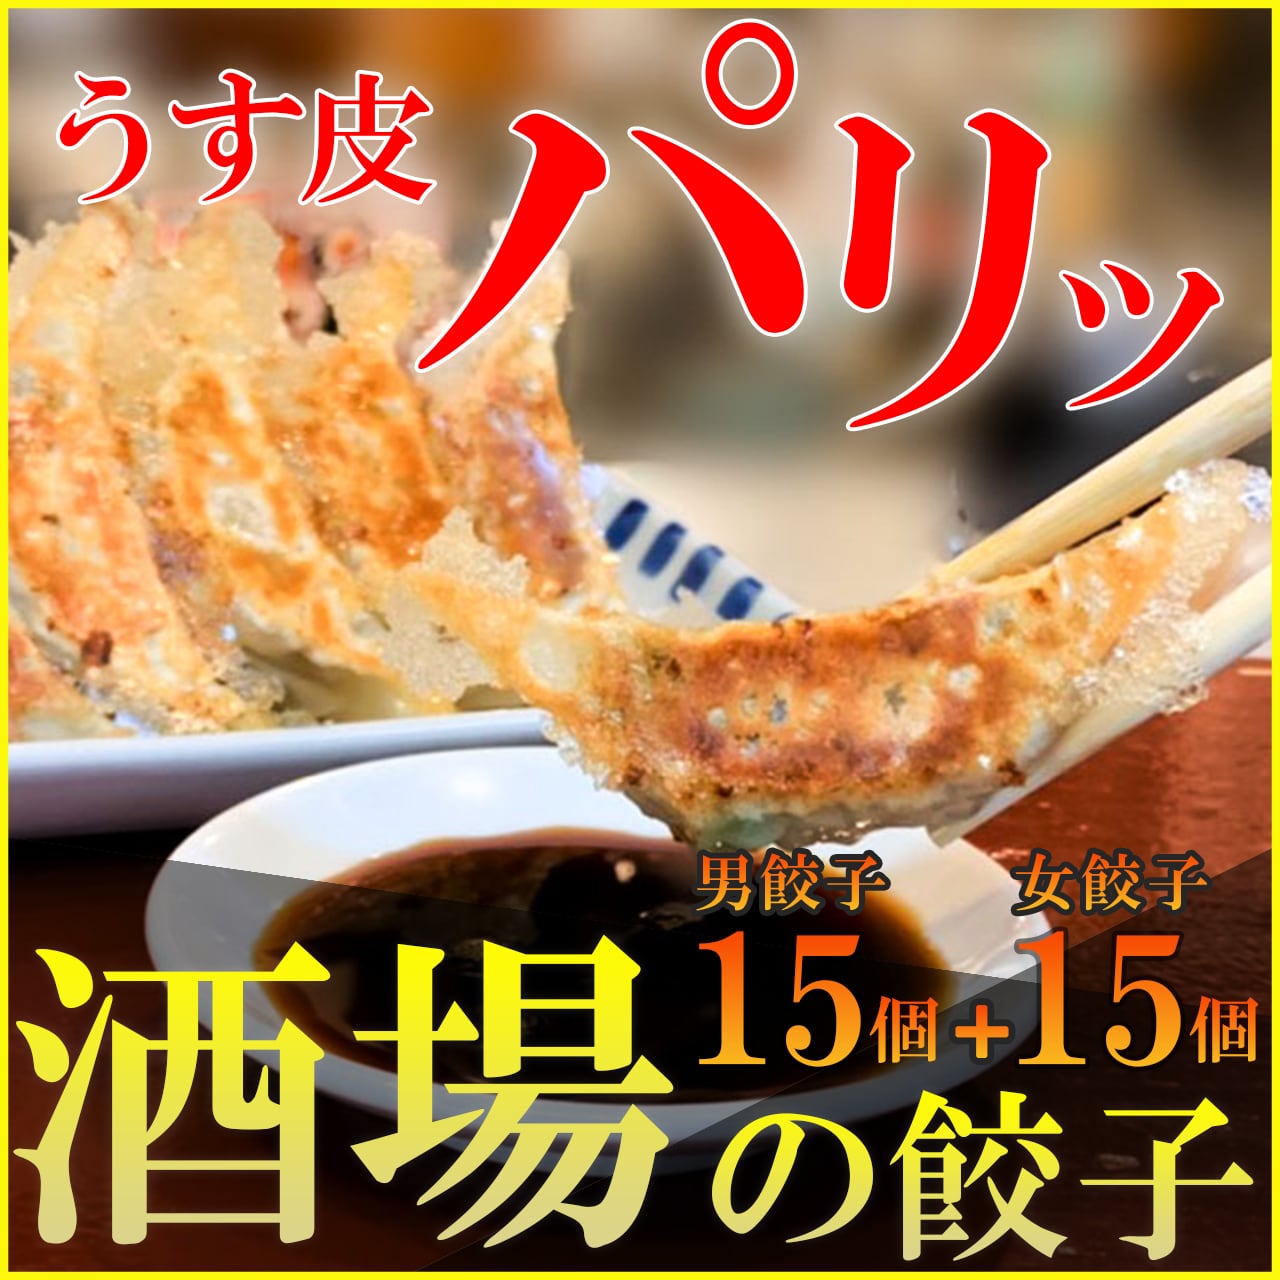 餃子食べくらべセット 【福袋セール】